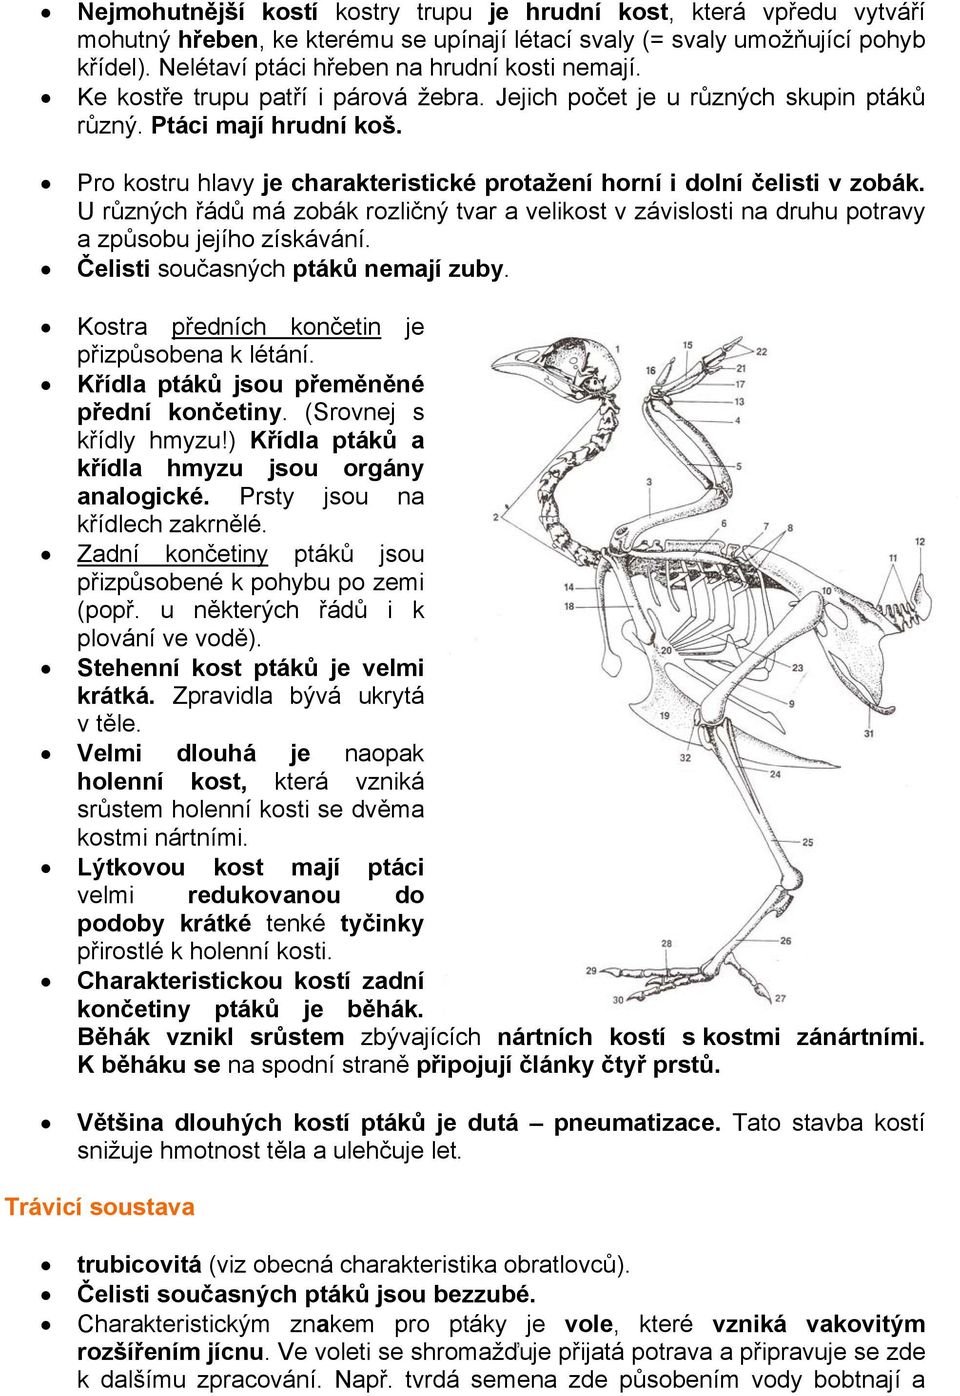 Pro kostru hlavy je charakteristické protažení horní i dolní čelisti v zobák. U různých řádů má zobák rozličný tvar a velikost v závislosti na druhu potravy a způsobu jejího získávání.